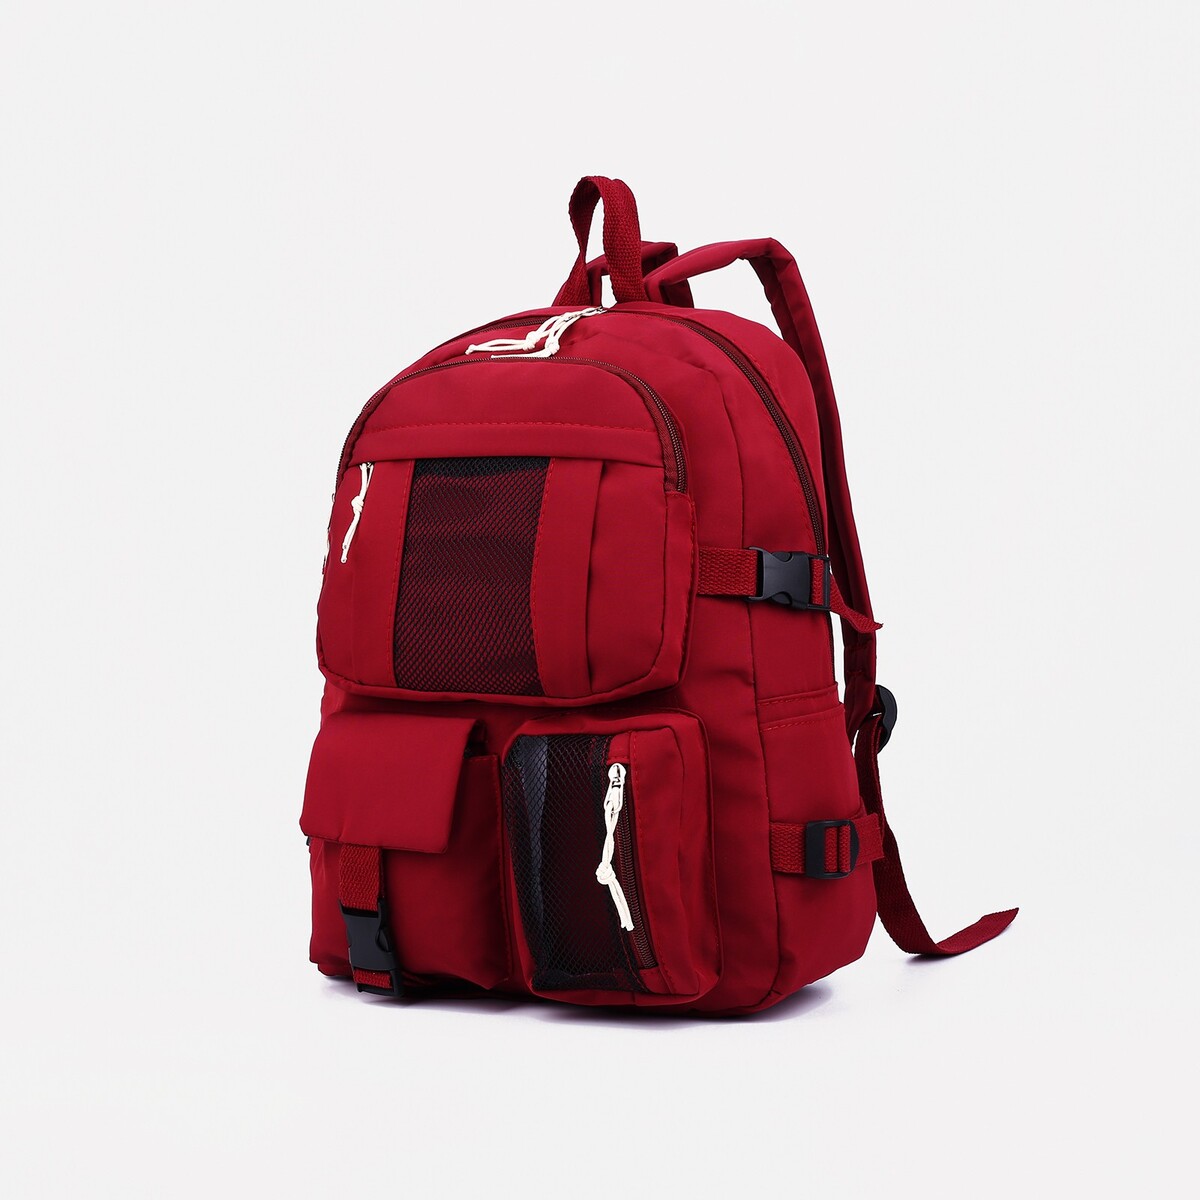 Рюкзак школьный на молнии, 5 наружных карманов, цвет красный рюкзак на молнии 5 наружных карманов пенал бордовый